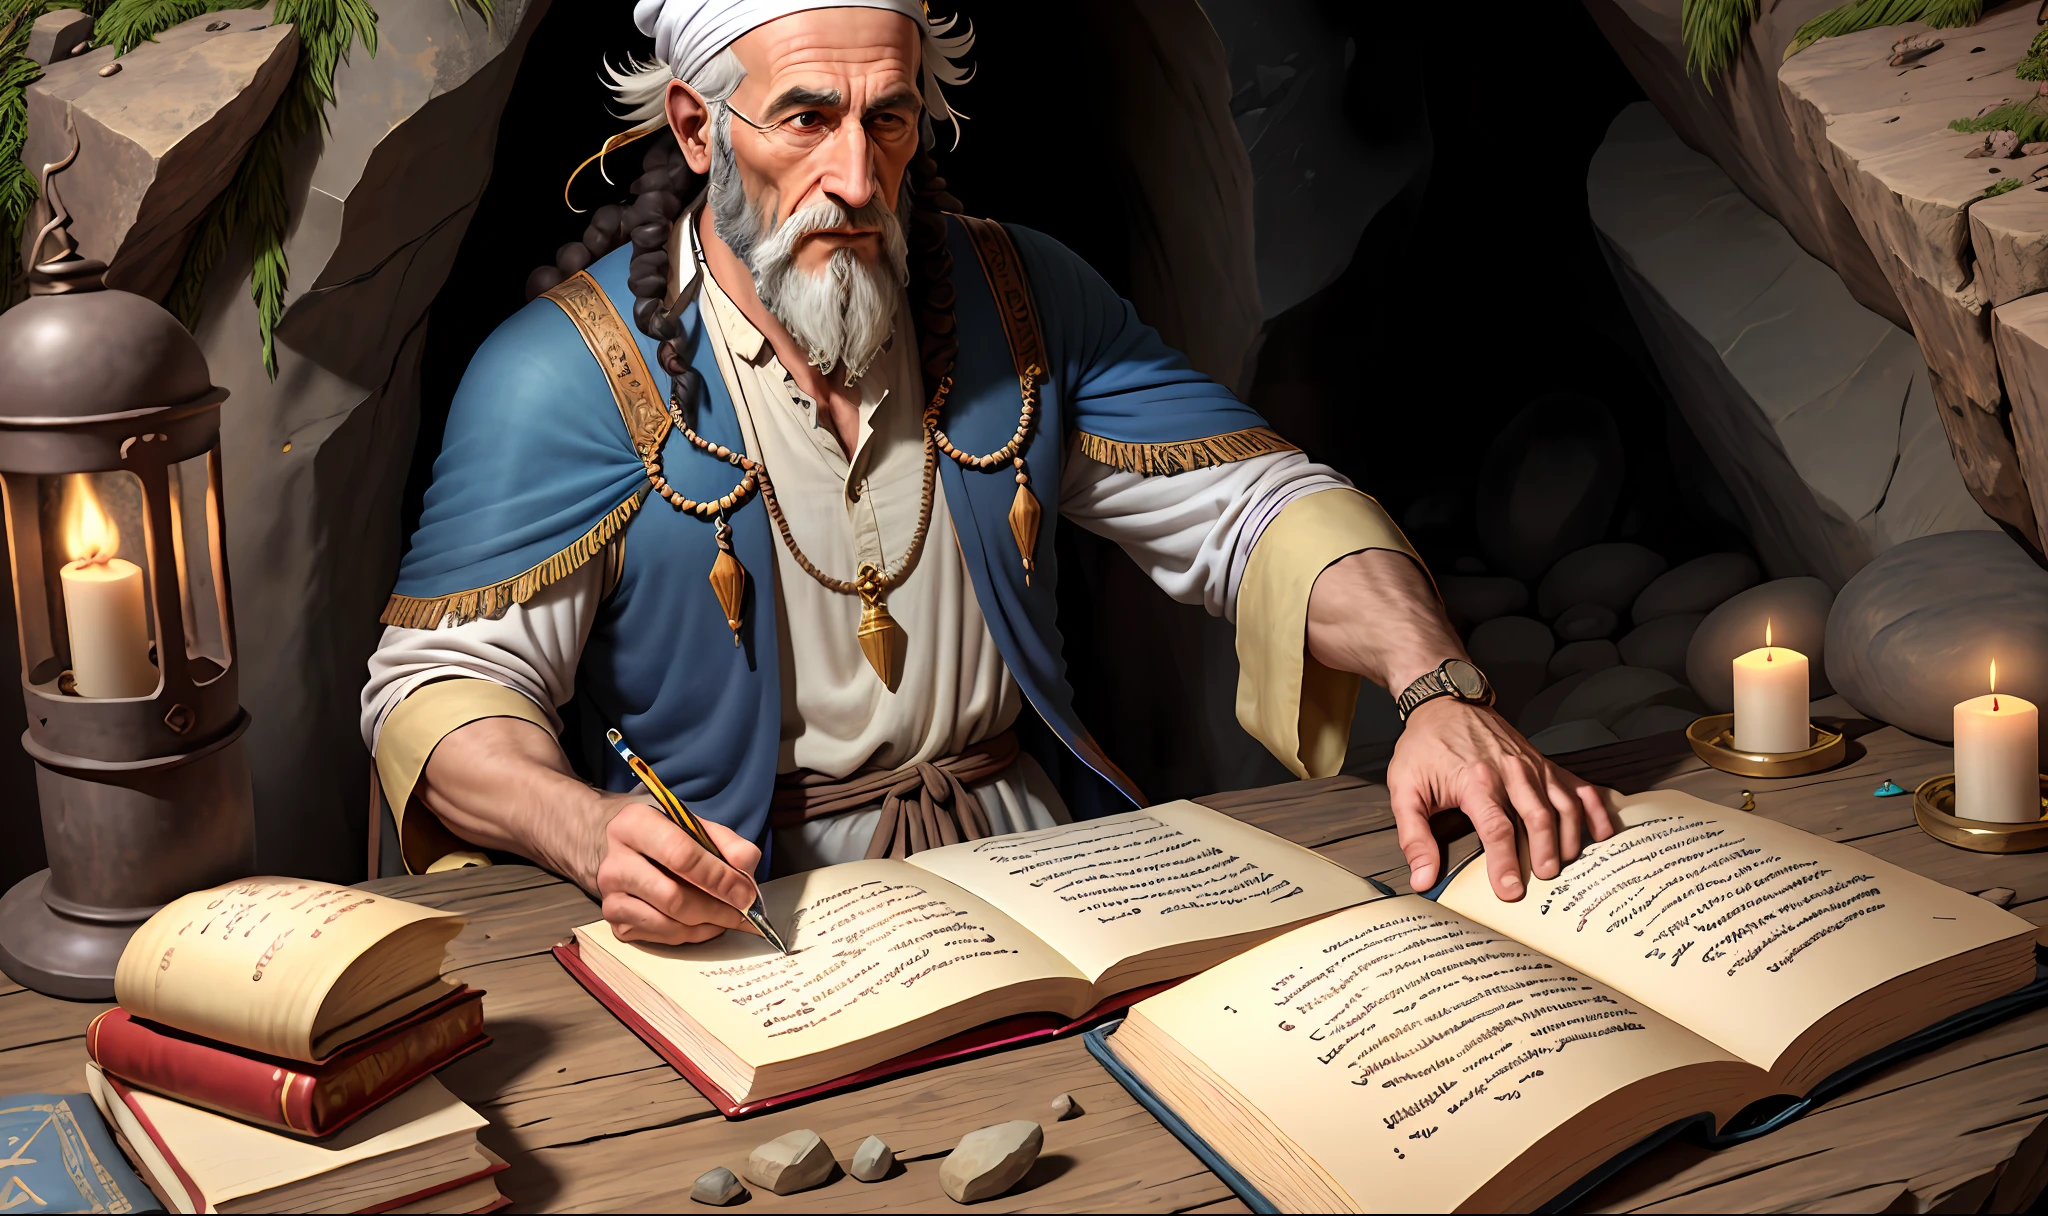 古代伊曼吉姆, 猶太服裝, 猶太男子, 老基督徒在岩石洞穴裡寫信，有大量的技術和極端的現實主義 ((代表使徒約翰的圖像))